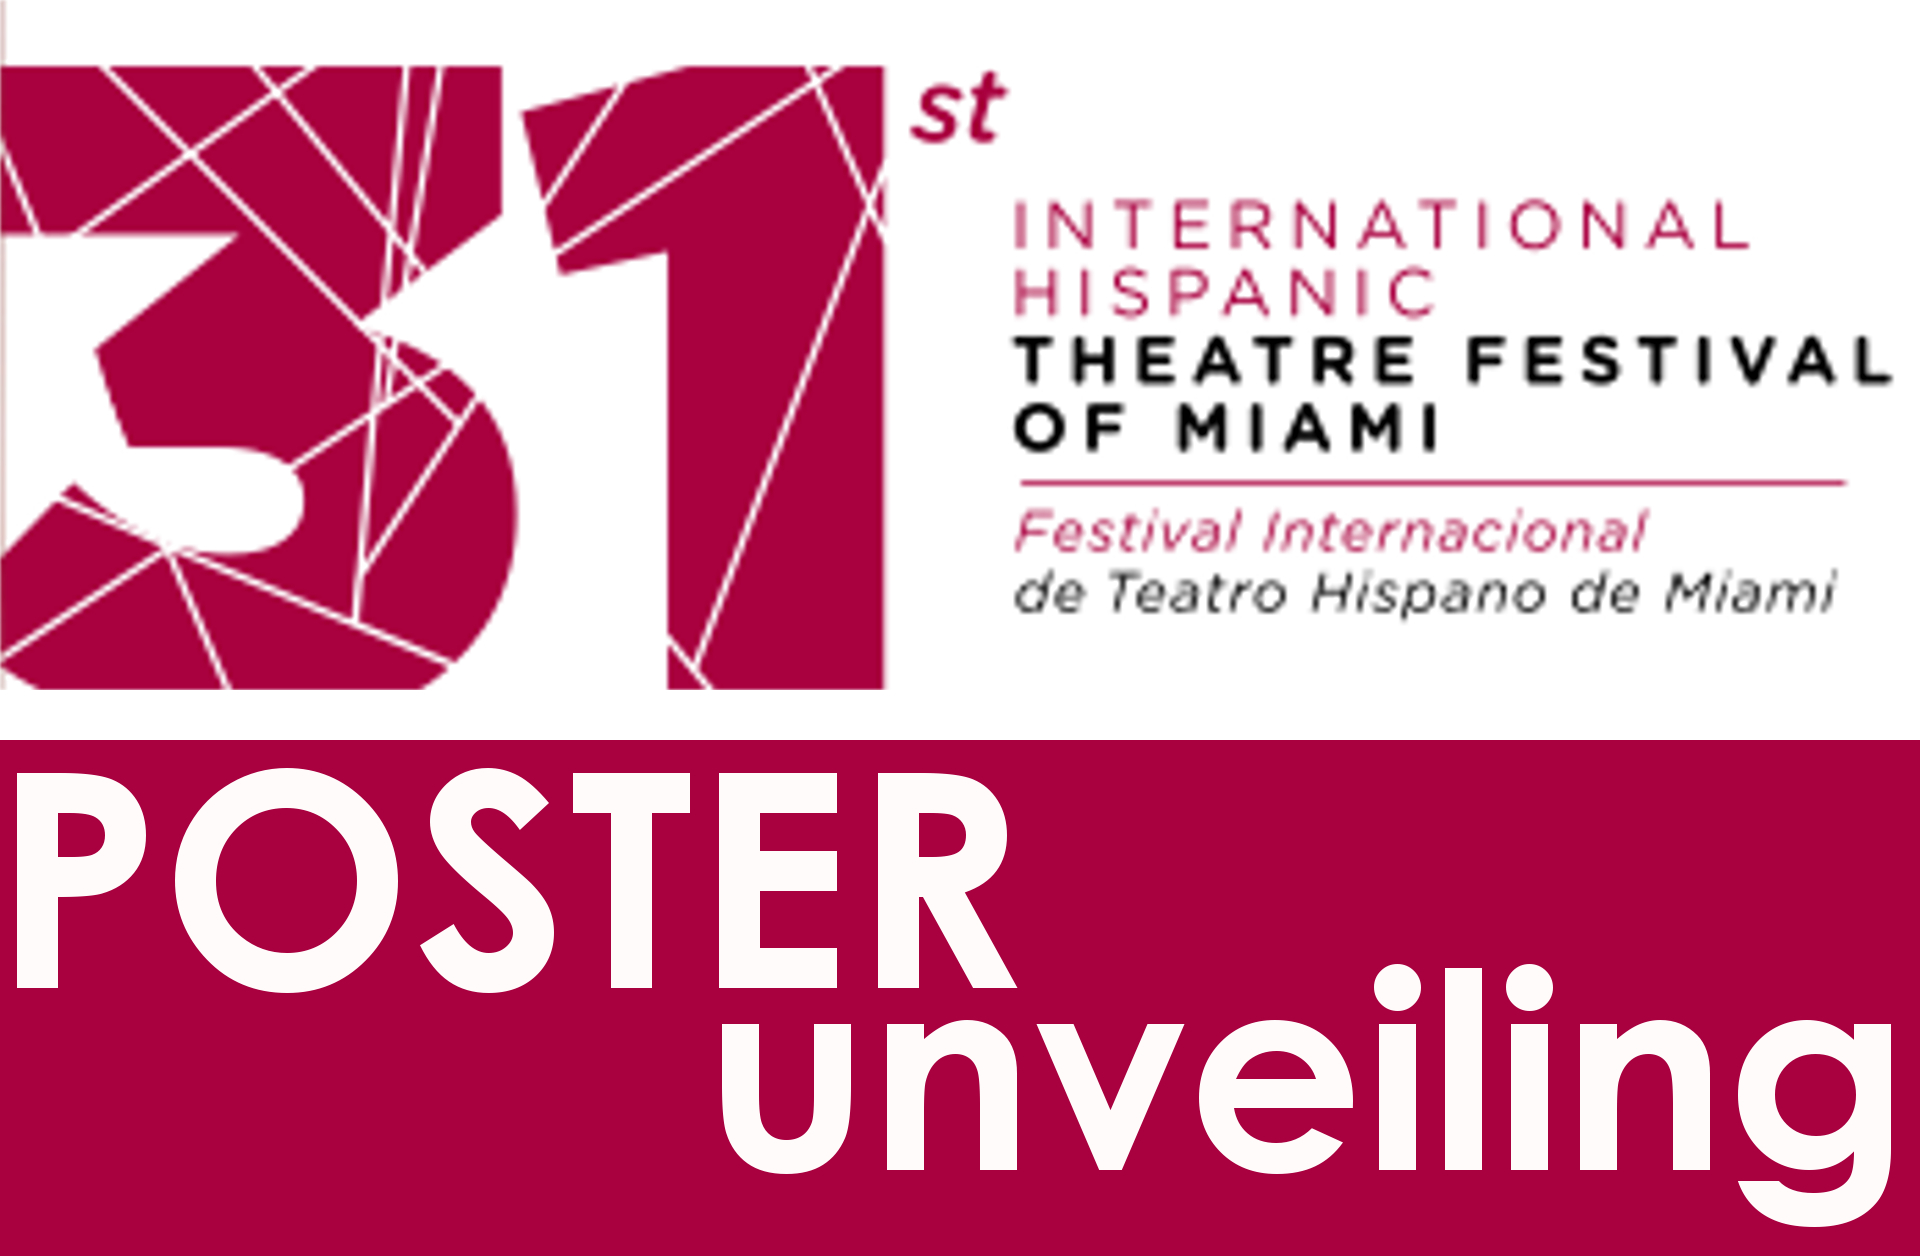 Teatro Avante 31-IHTF Poster Unveiling